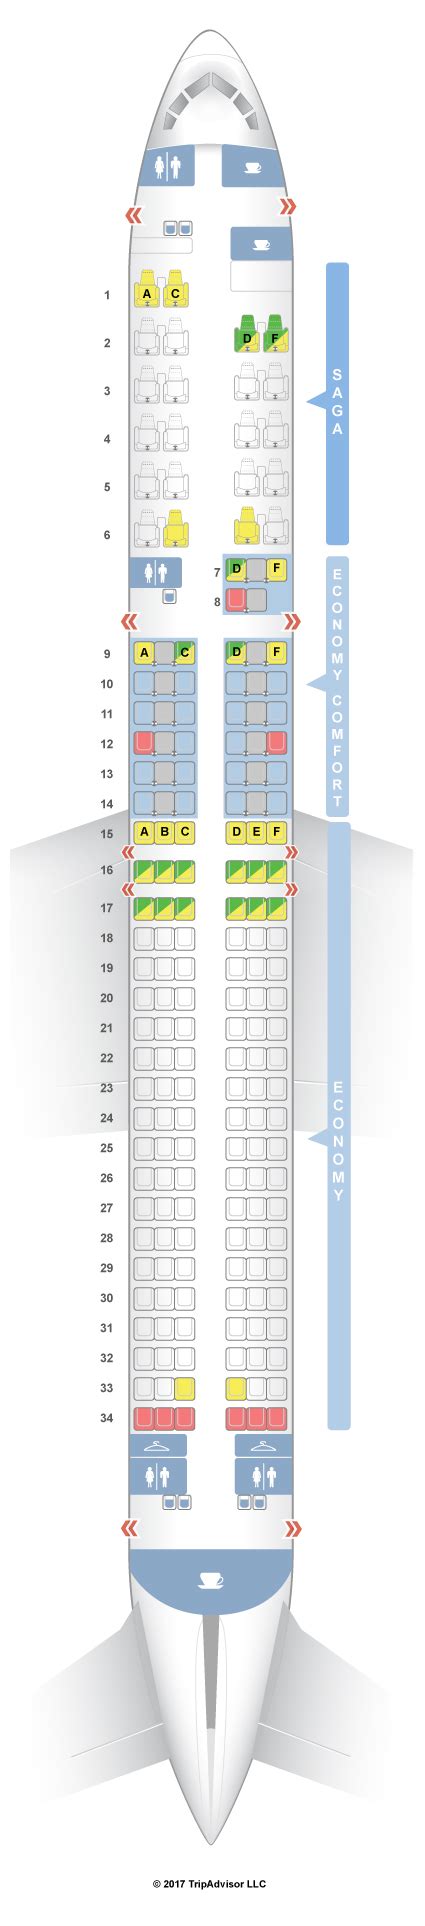 Icelandair b757 seat map. Things To Know About Icelandair b757 seat map. 